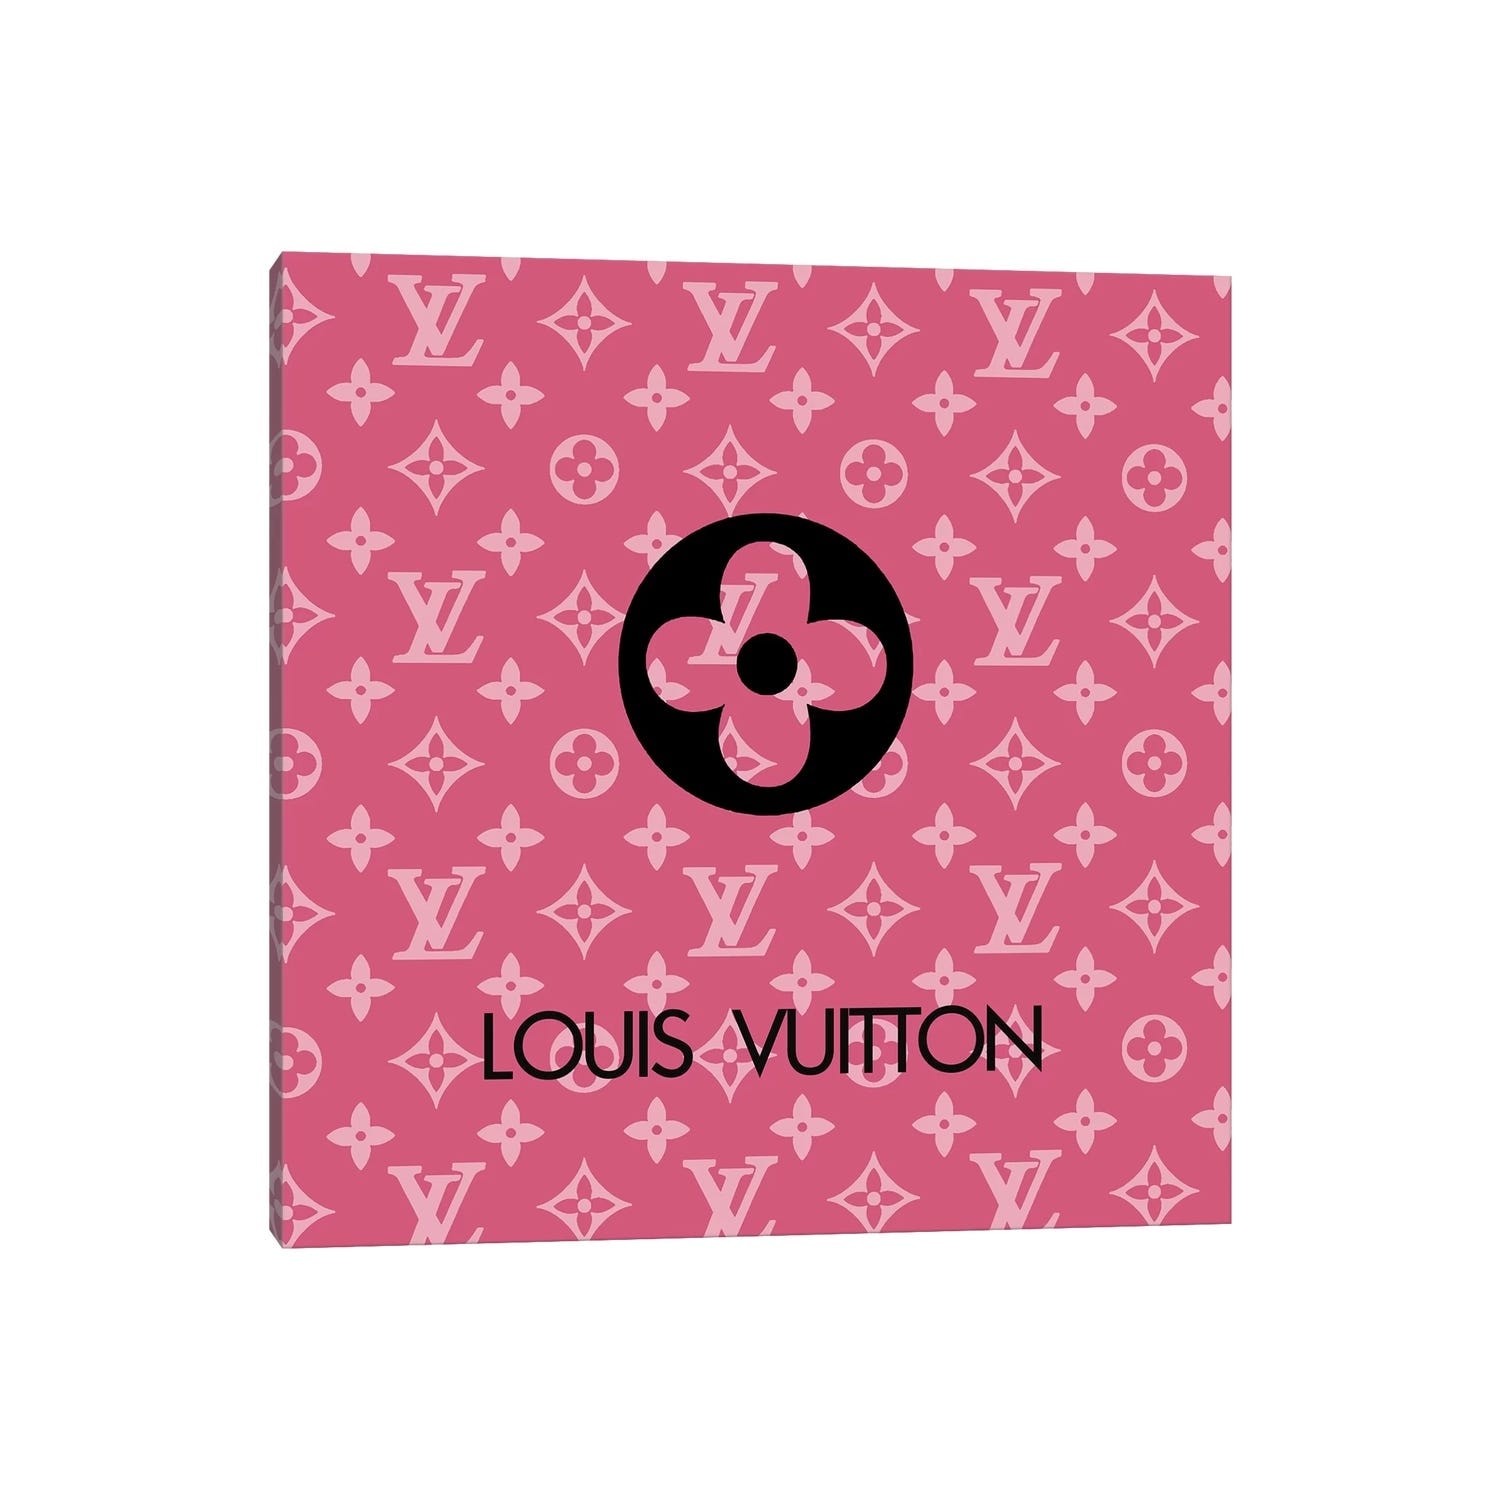 Louis Vuitton Glams-up Garbage